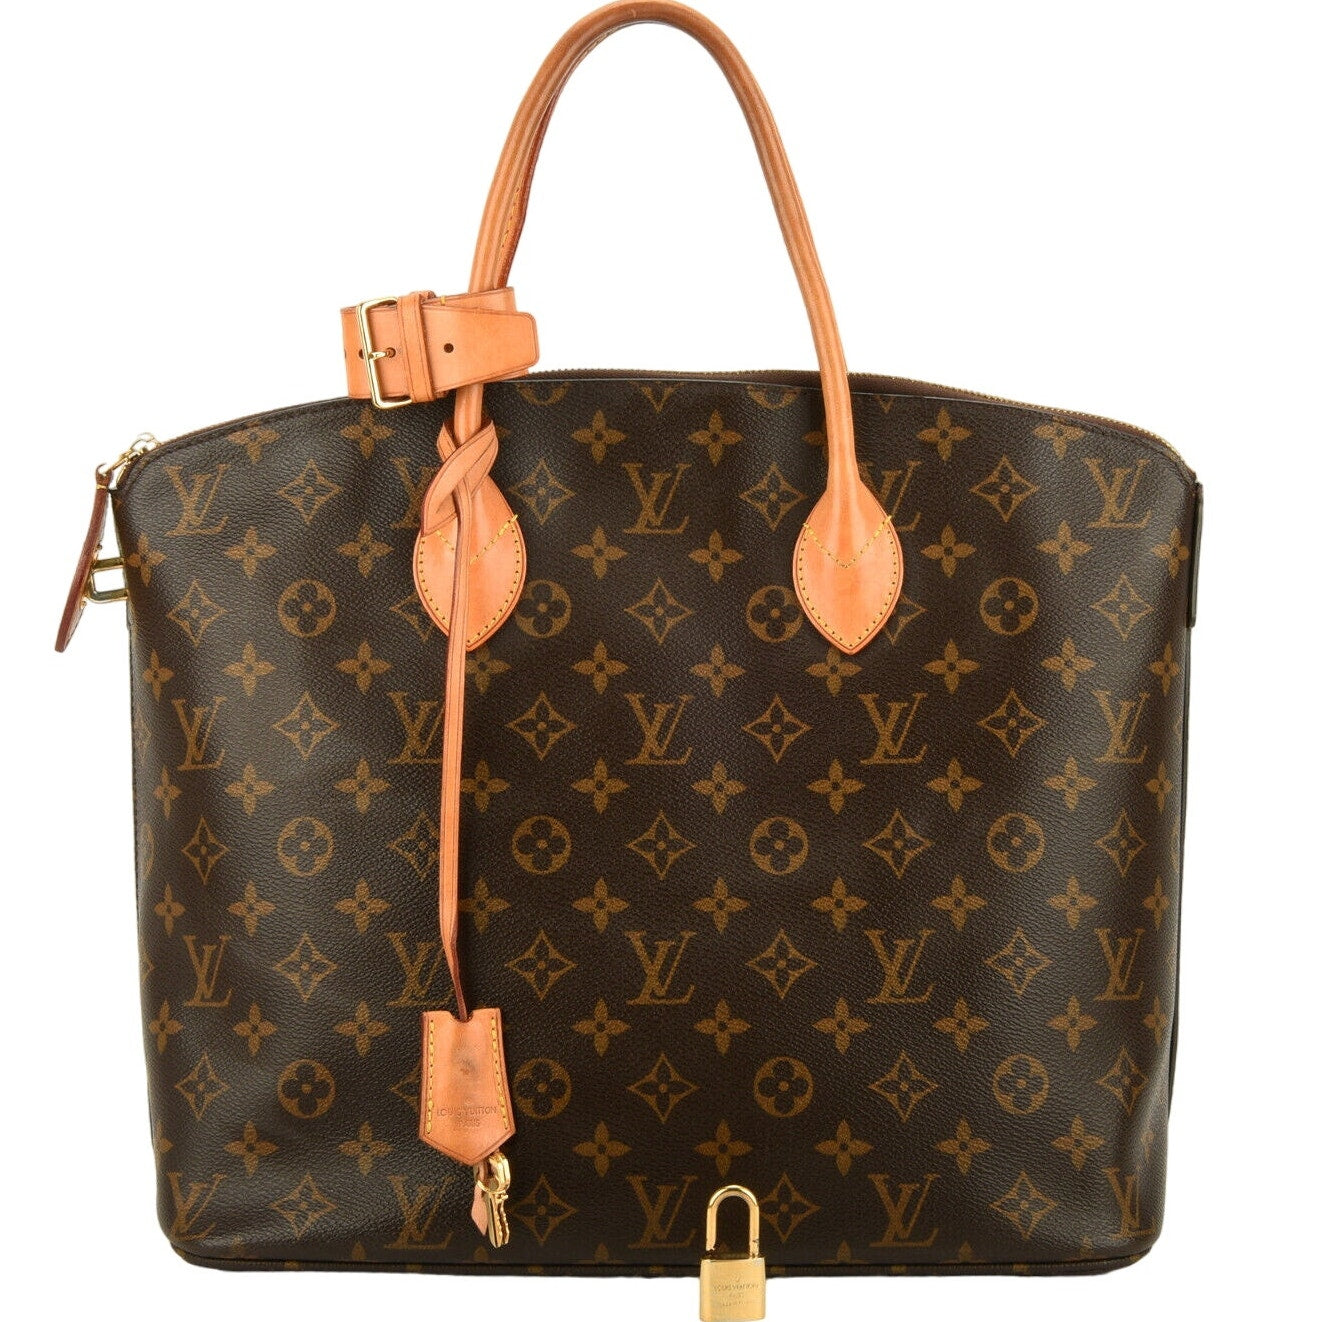 Authentic Louis Vuitton Lockit MM Monogram Tote Bag